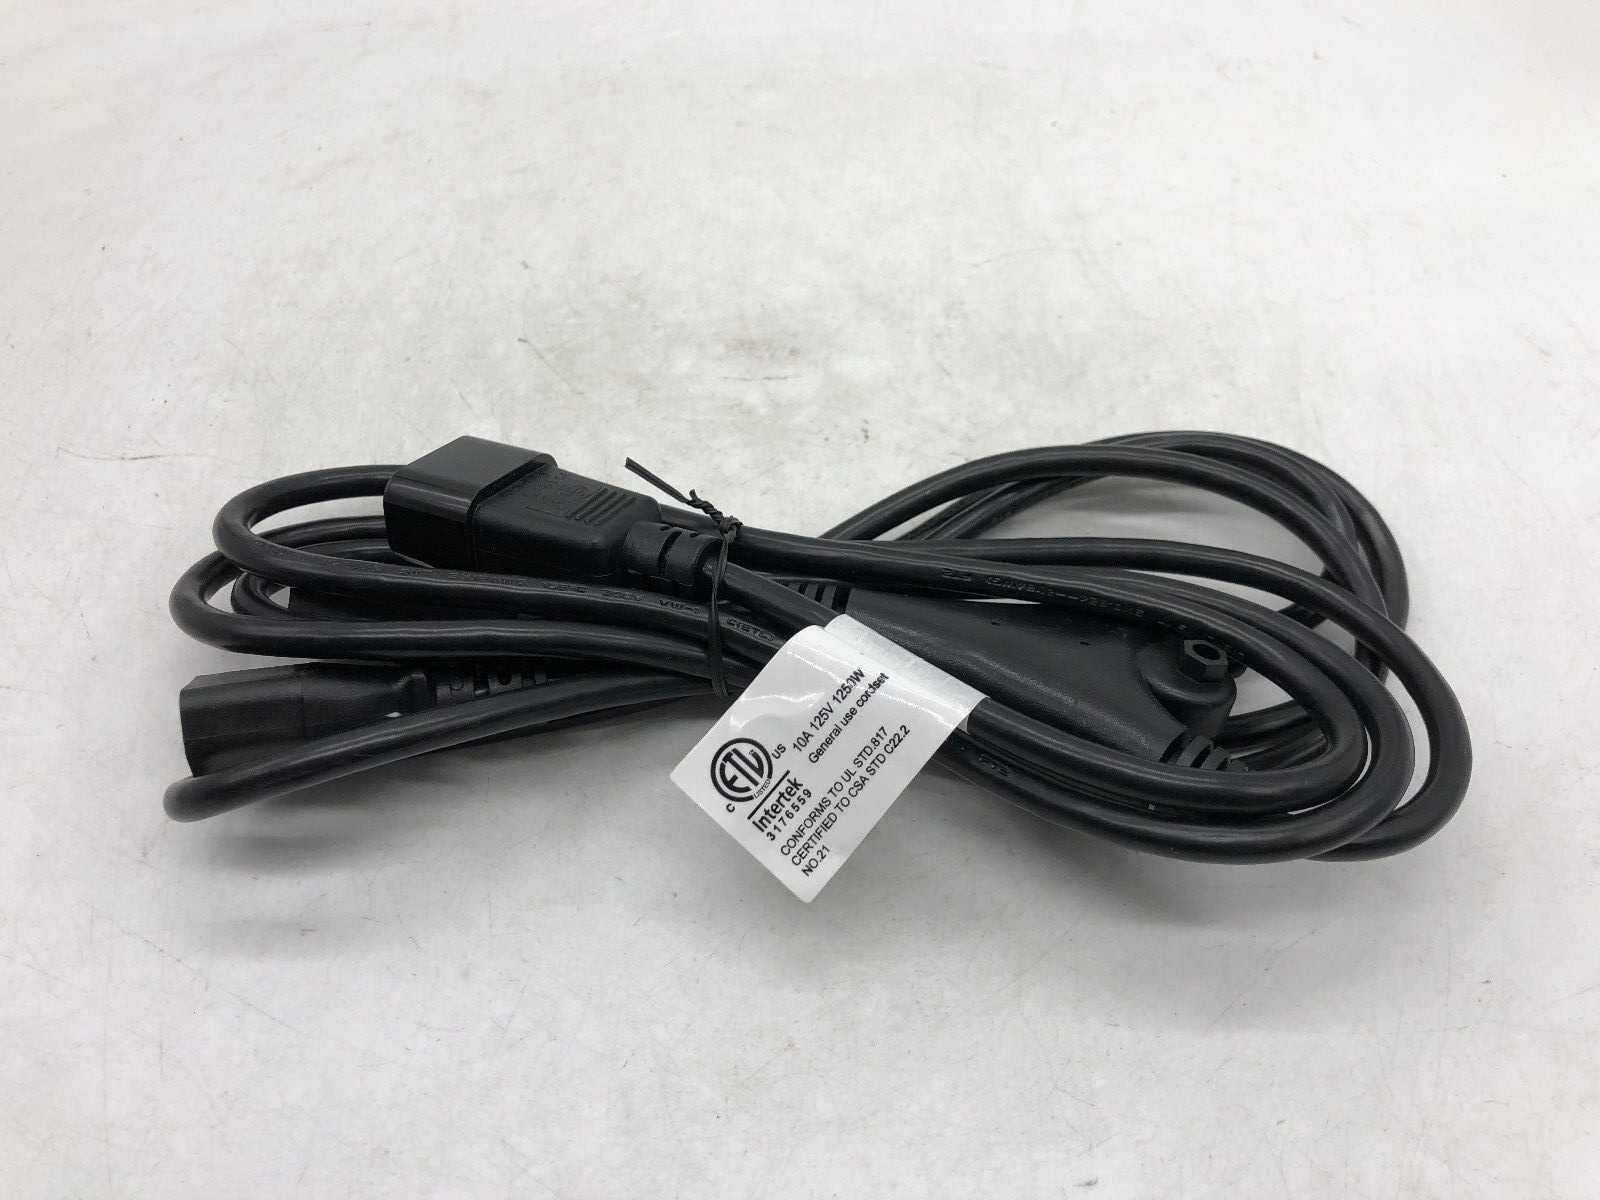 Monoprice Power Cord Splitter 18 AWG, 10A, SVT Black, 6 Feet